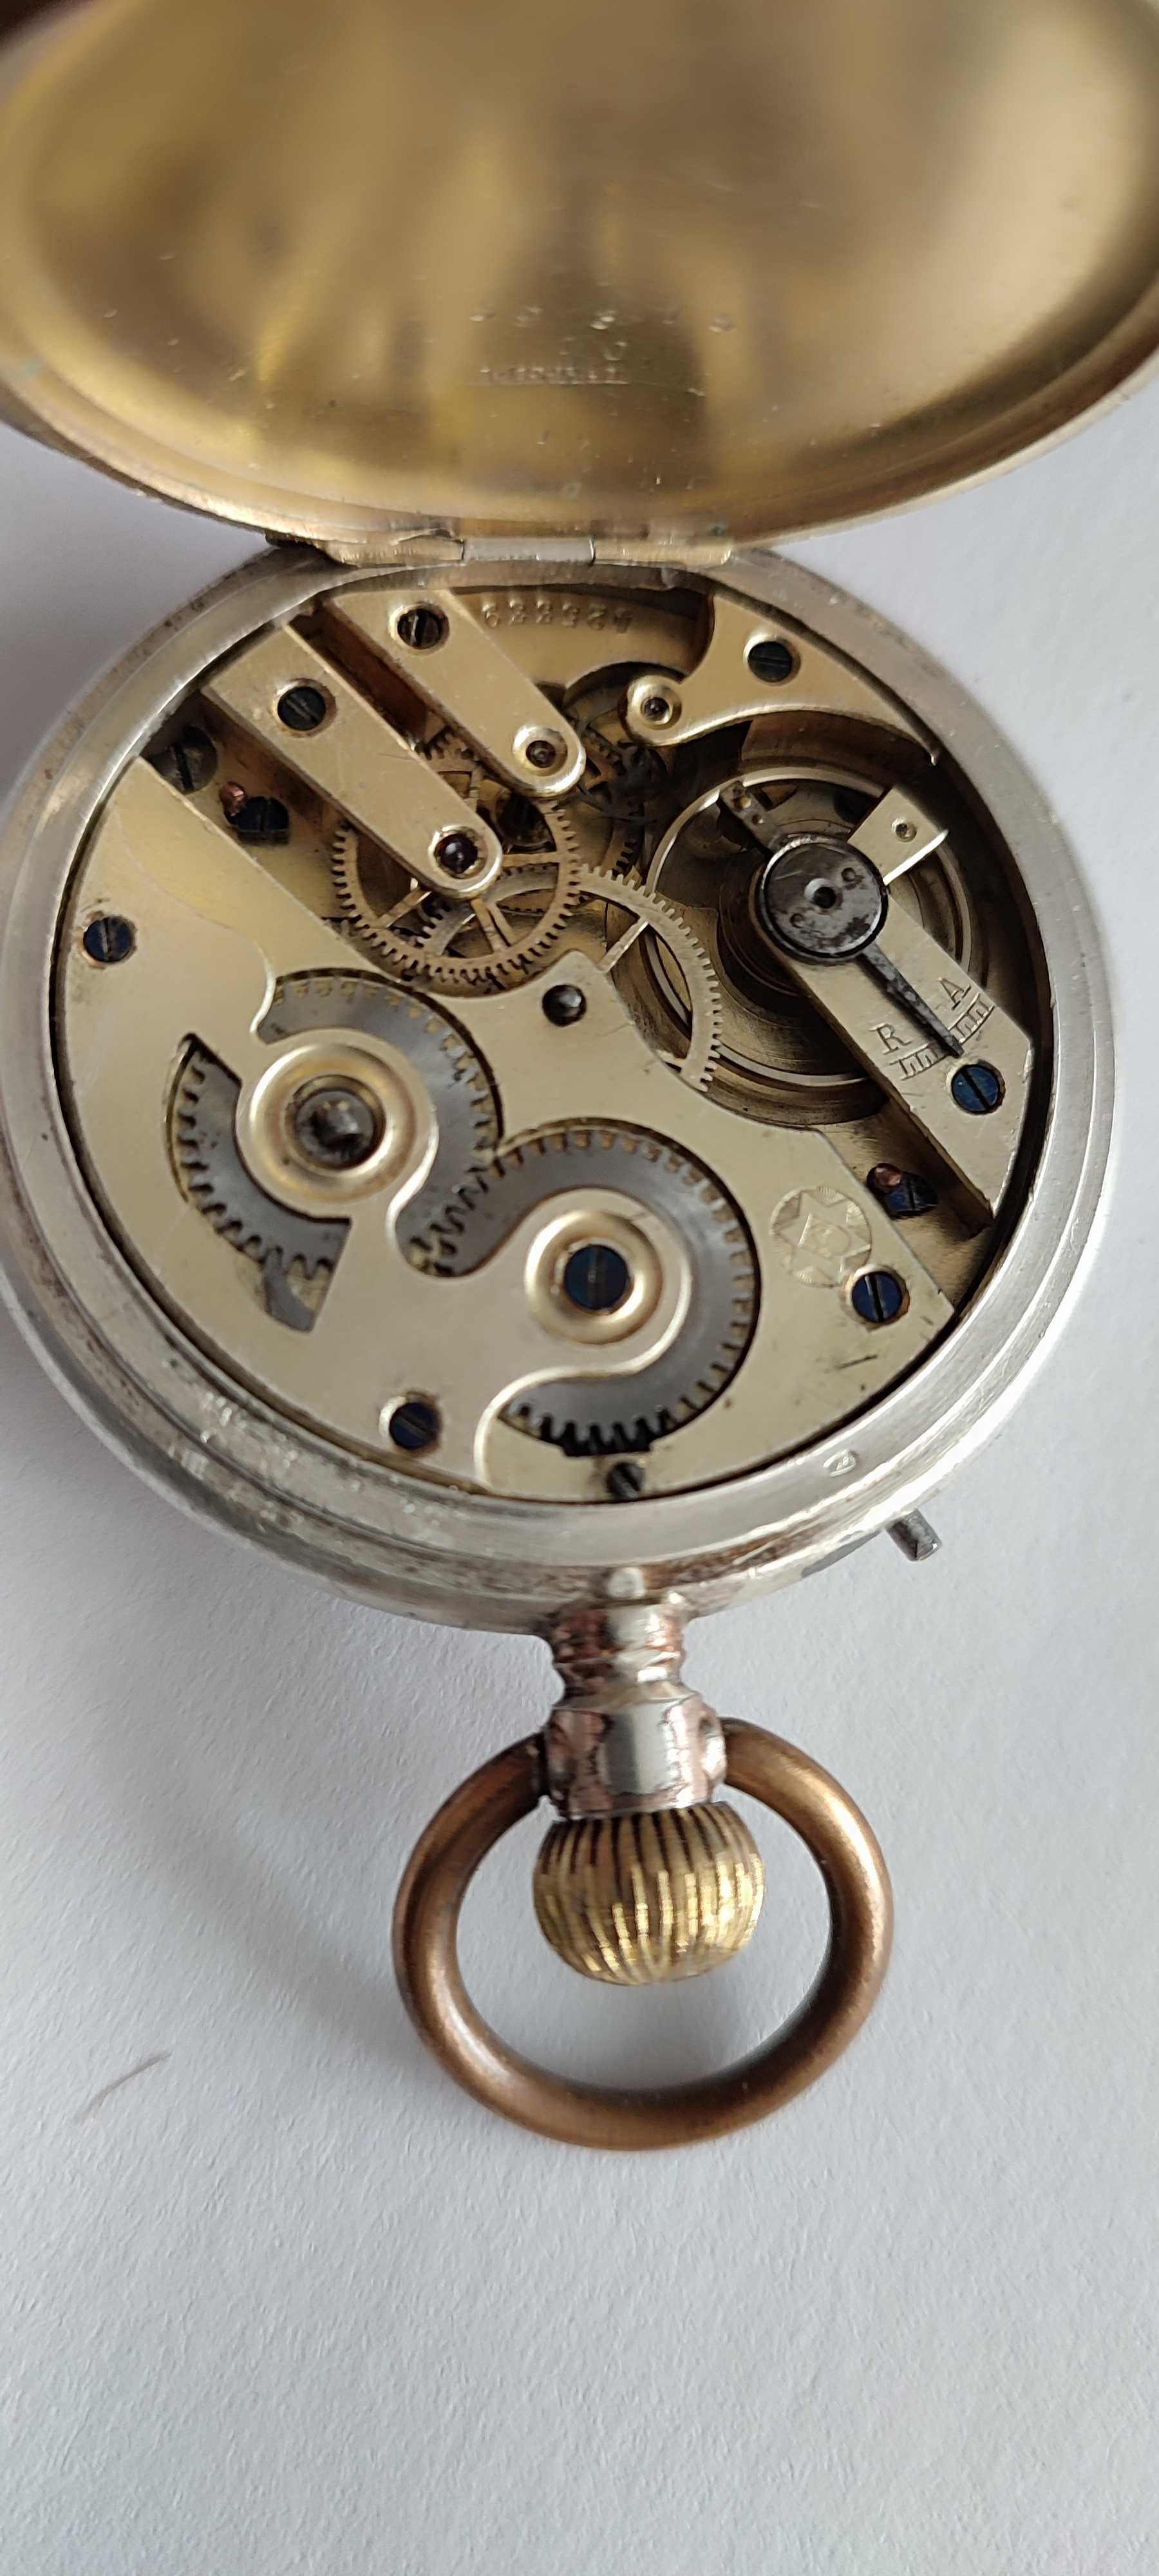 Zegarek kieszonkowy srebrny 0-800 sprawny